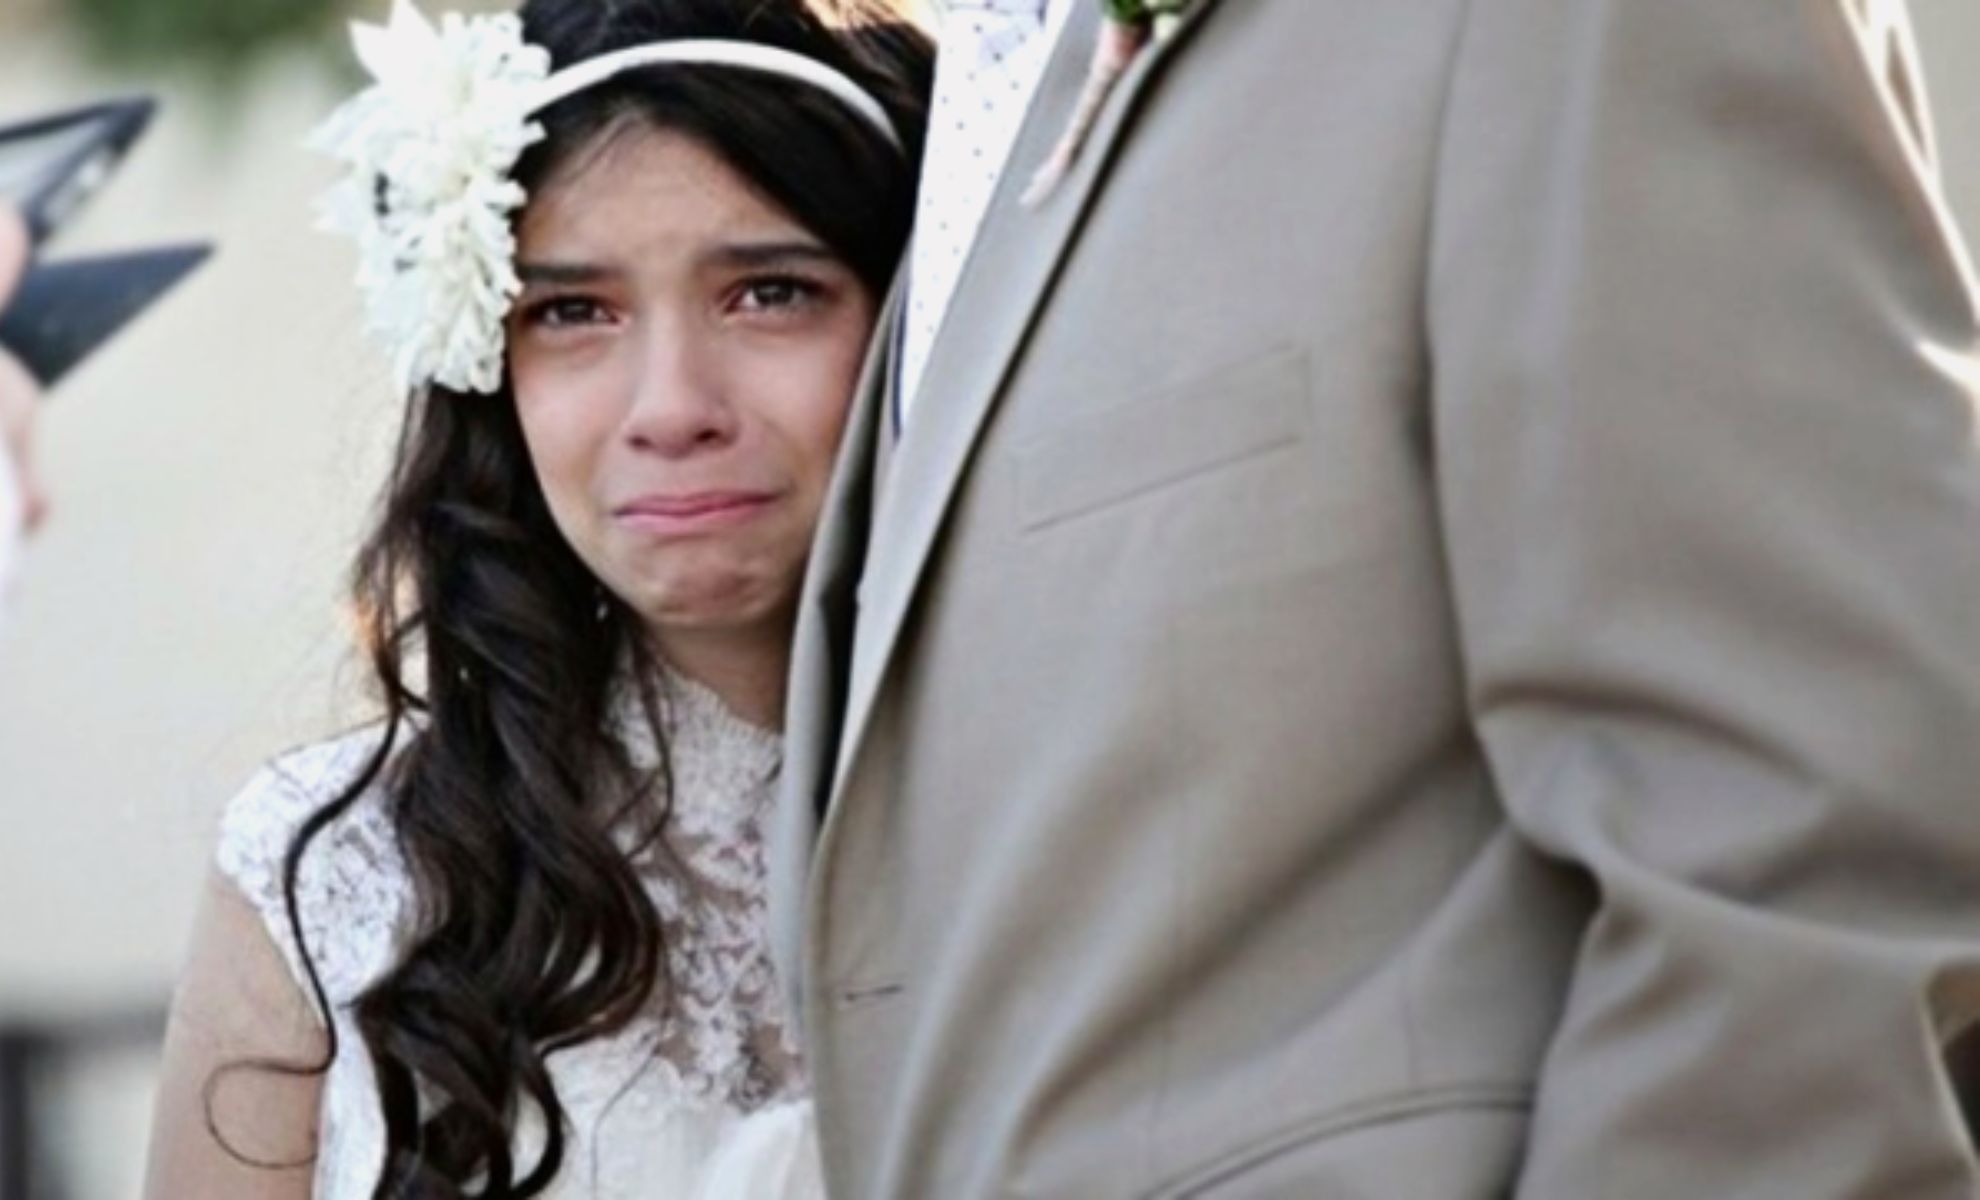 Mariage d'enfants - Fille en robe de mariage et en pleurs à côté d'un homme